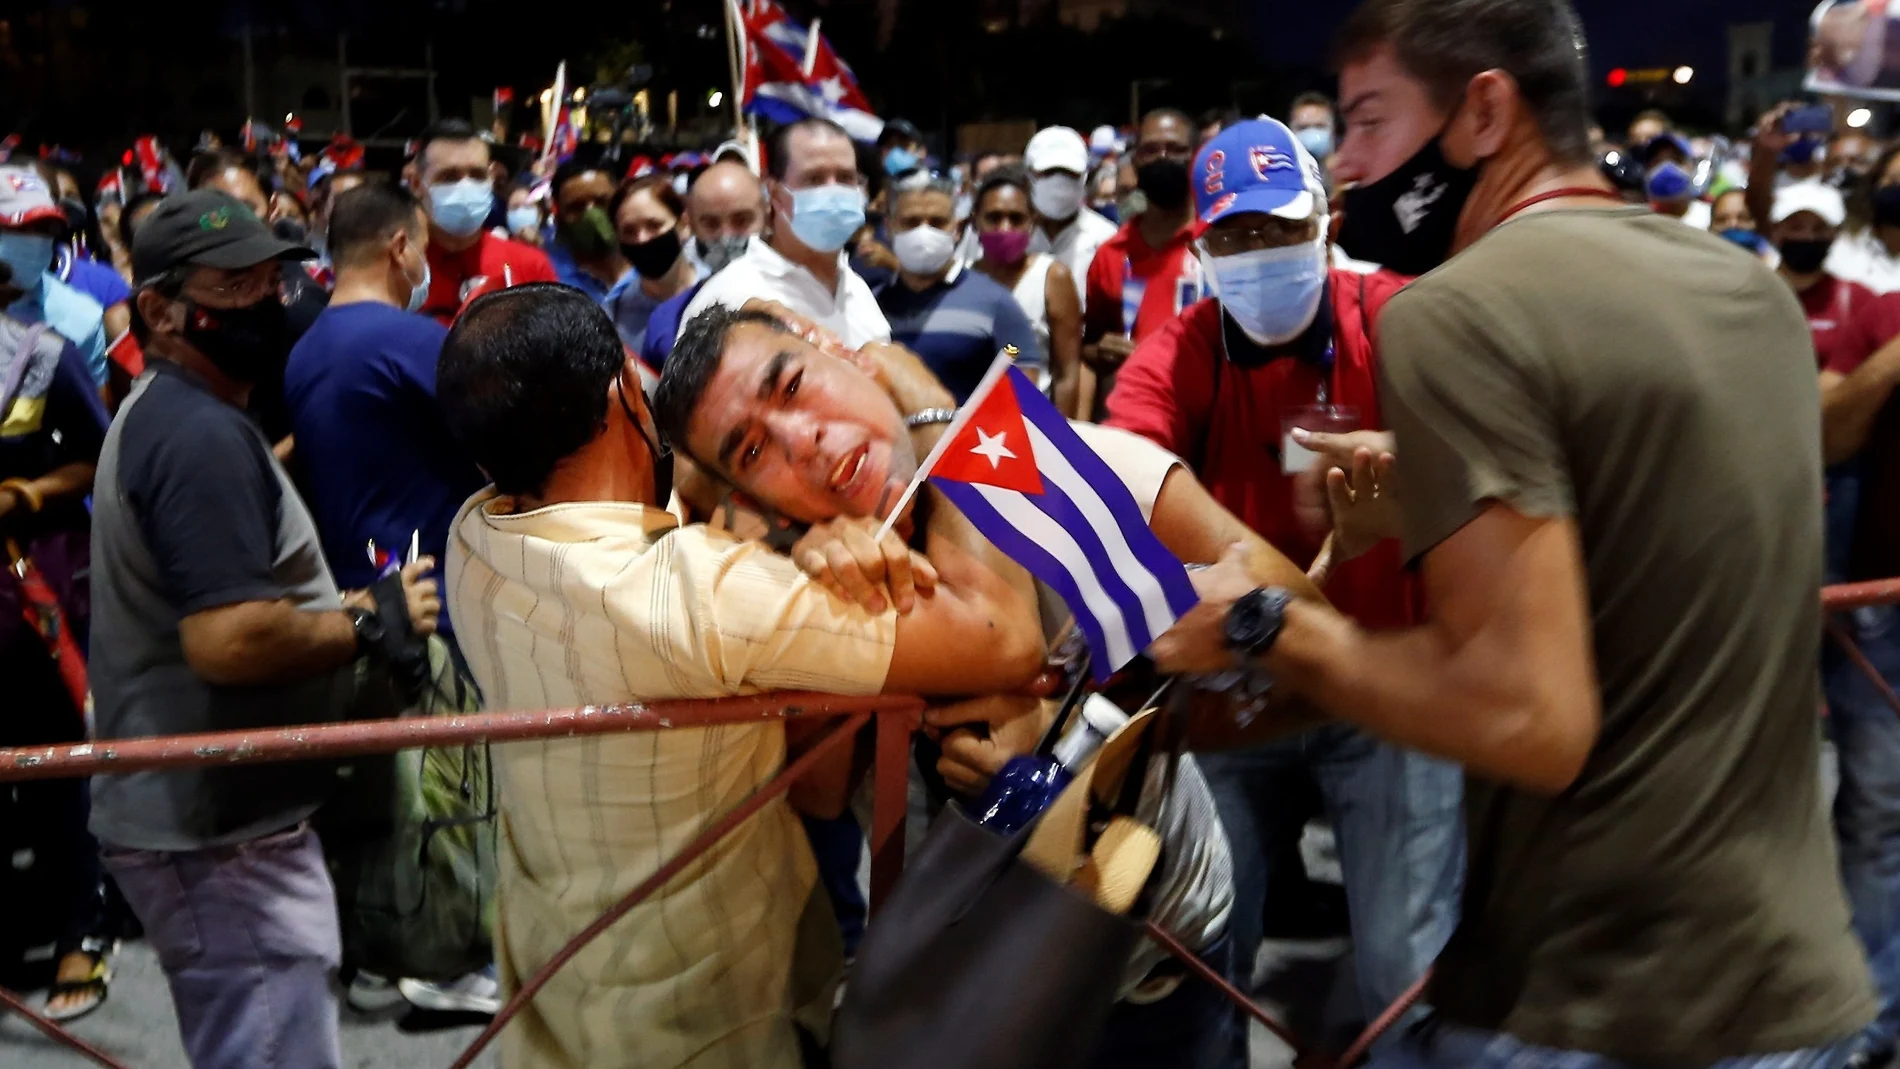 Un hombre es arrestado durante un acto de apoyo a la revolución ayer, en La Habana por gritar "Patria y Vida"